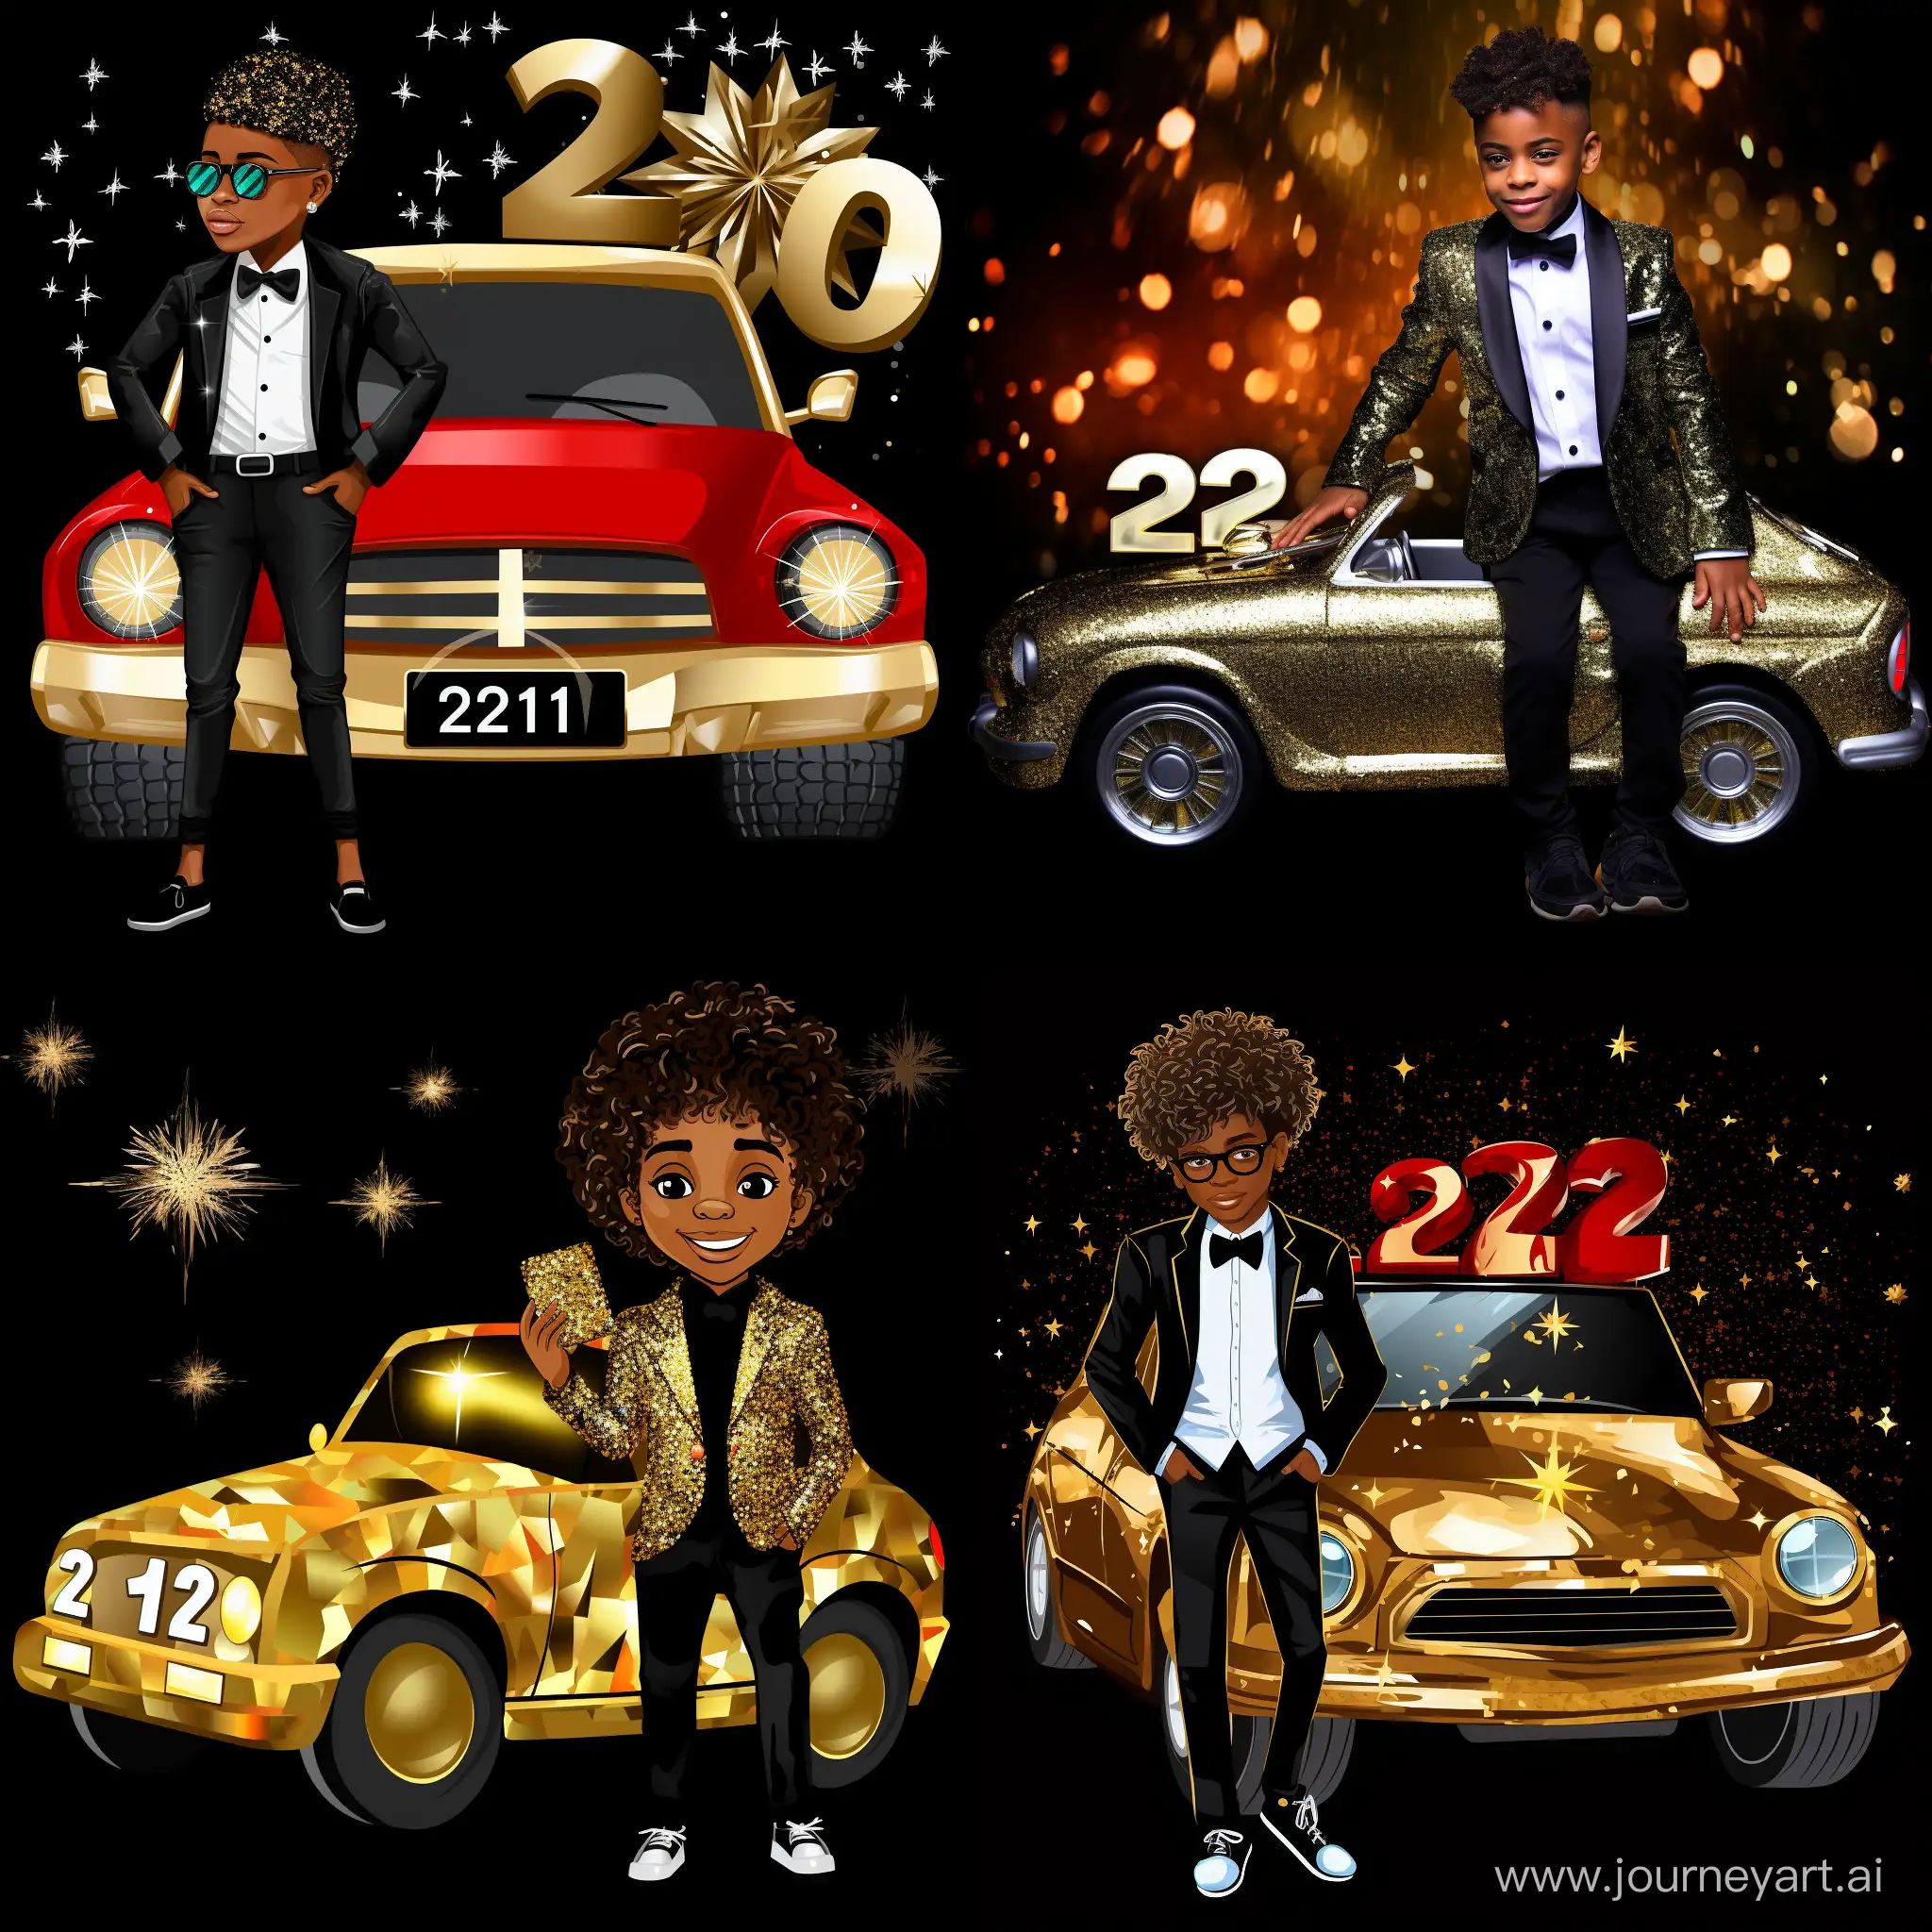 Stylish-New-Year-Celebration-Dapper-Boy-Ford-Sports-Car-and-Fireworks